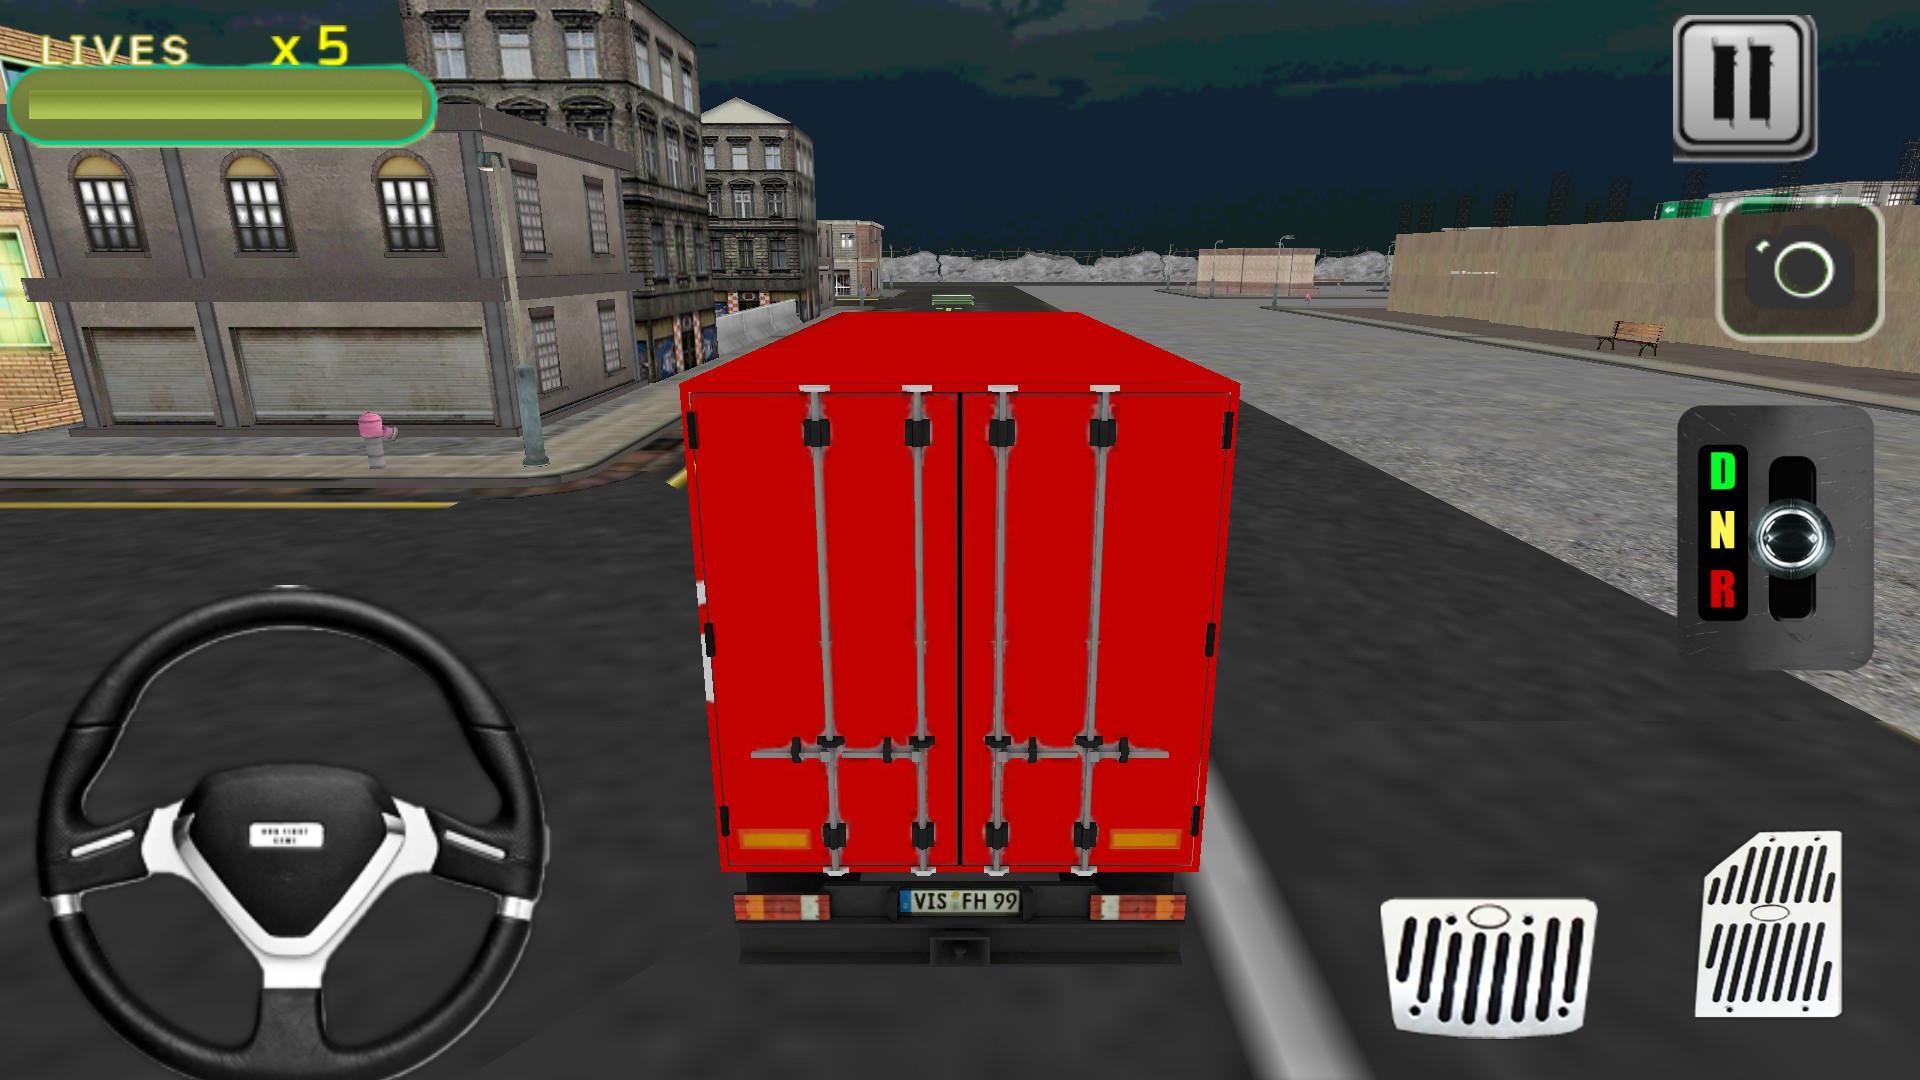 Truck simulator ultimate apk. Винилы в трак симулятор ультимейт. Truck Simulator Ultimate на андроид. Вирилы в трак симулятор ультимейт. Как зайти в грузовик симулятор 18.